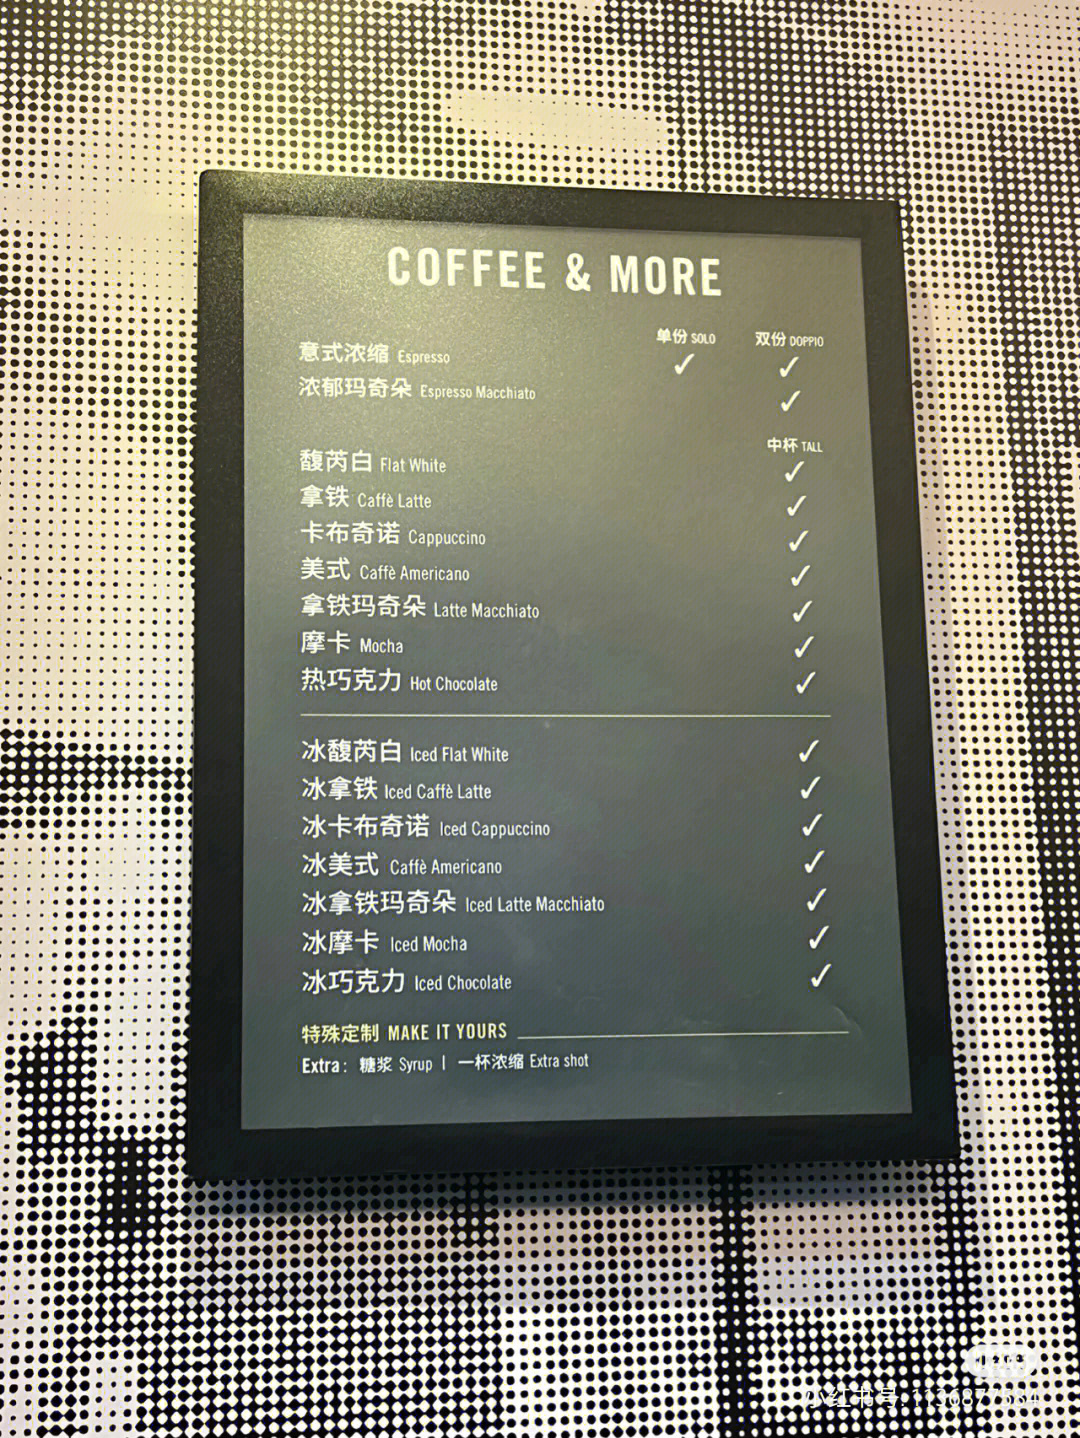 星巴克咖啡服务菜单是一样的吗